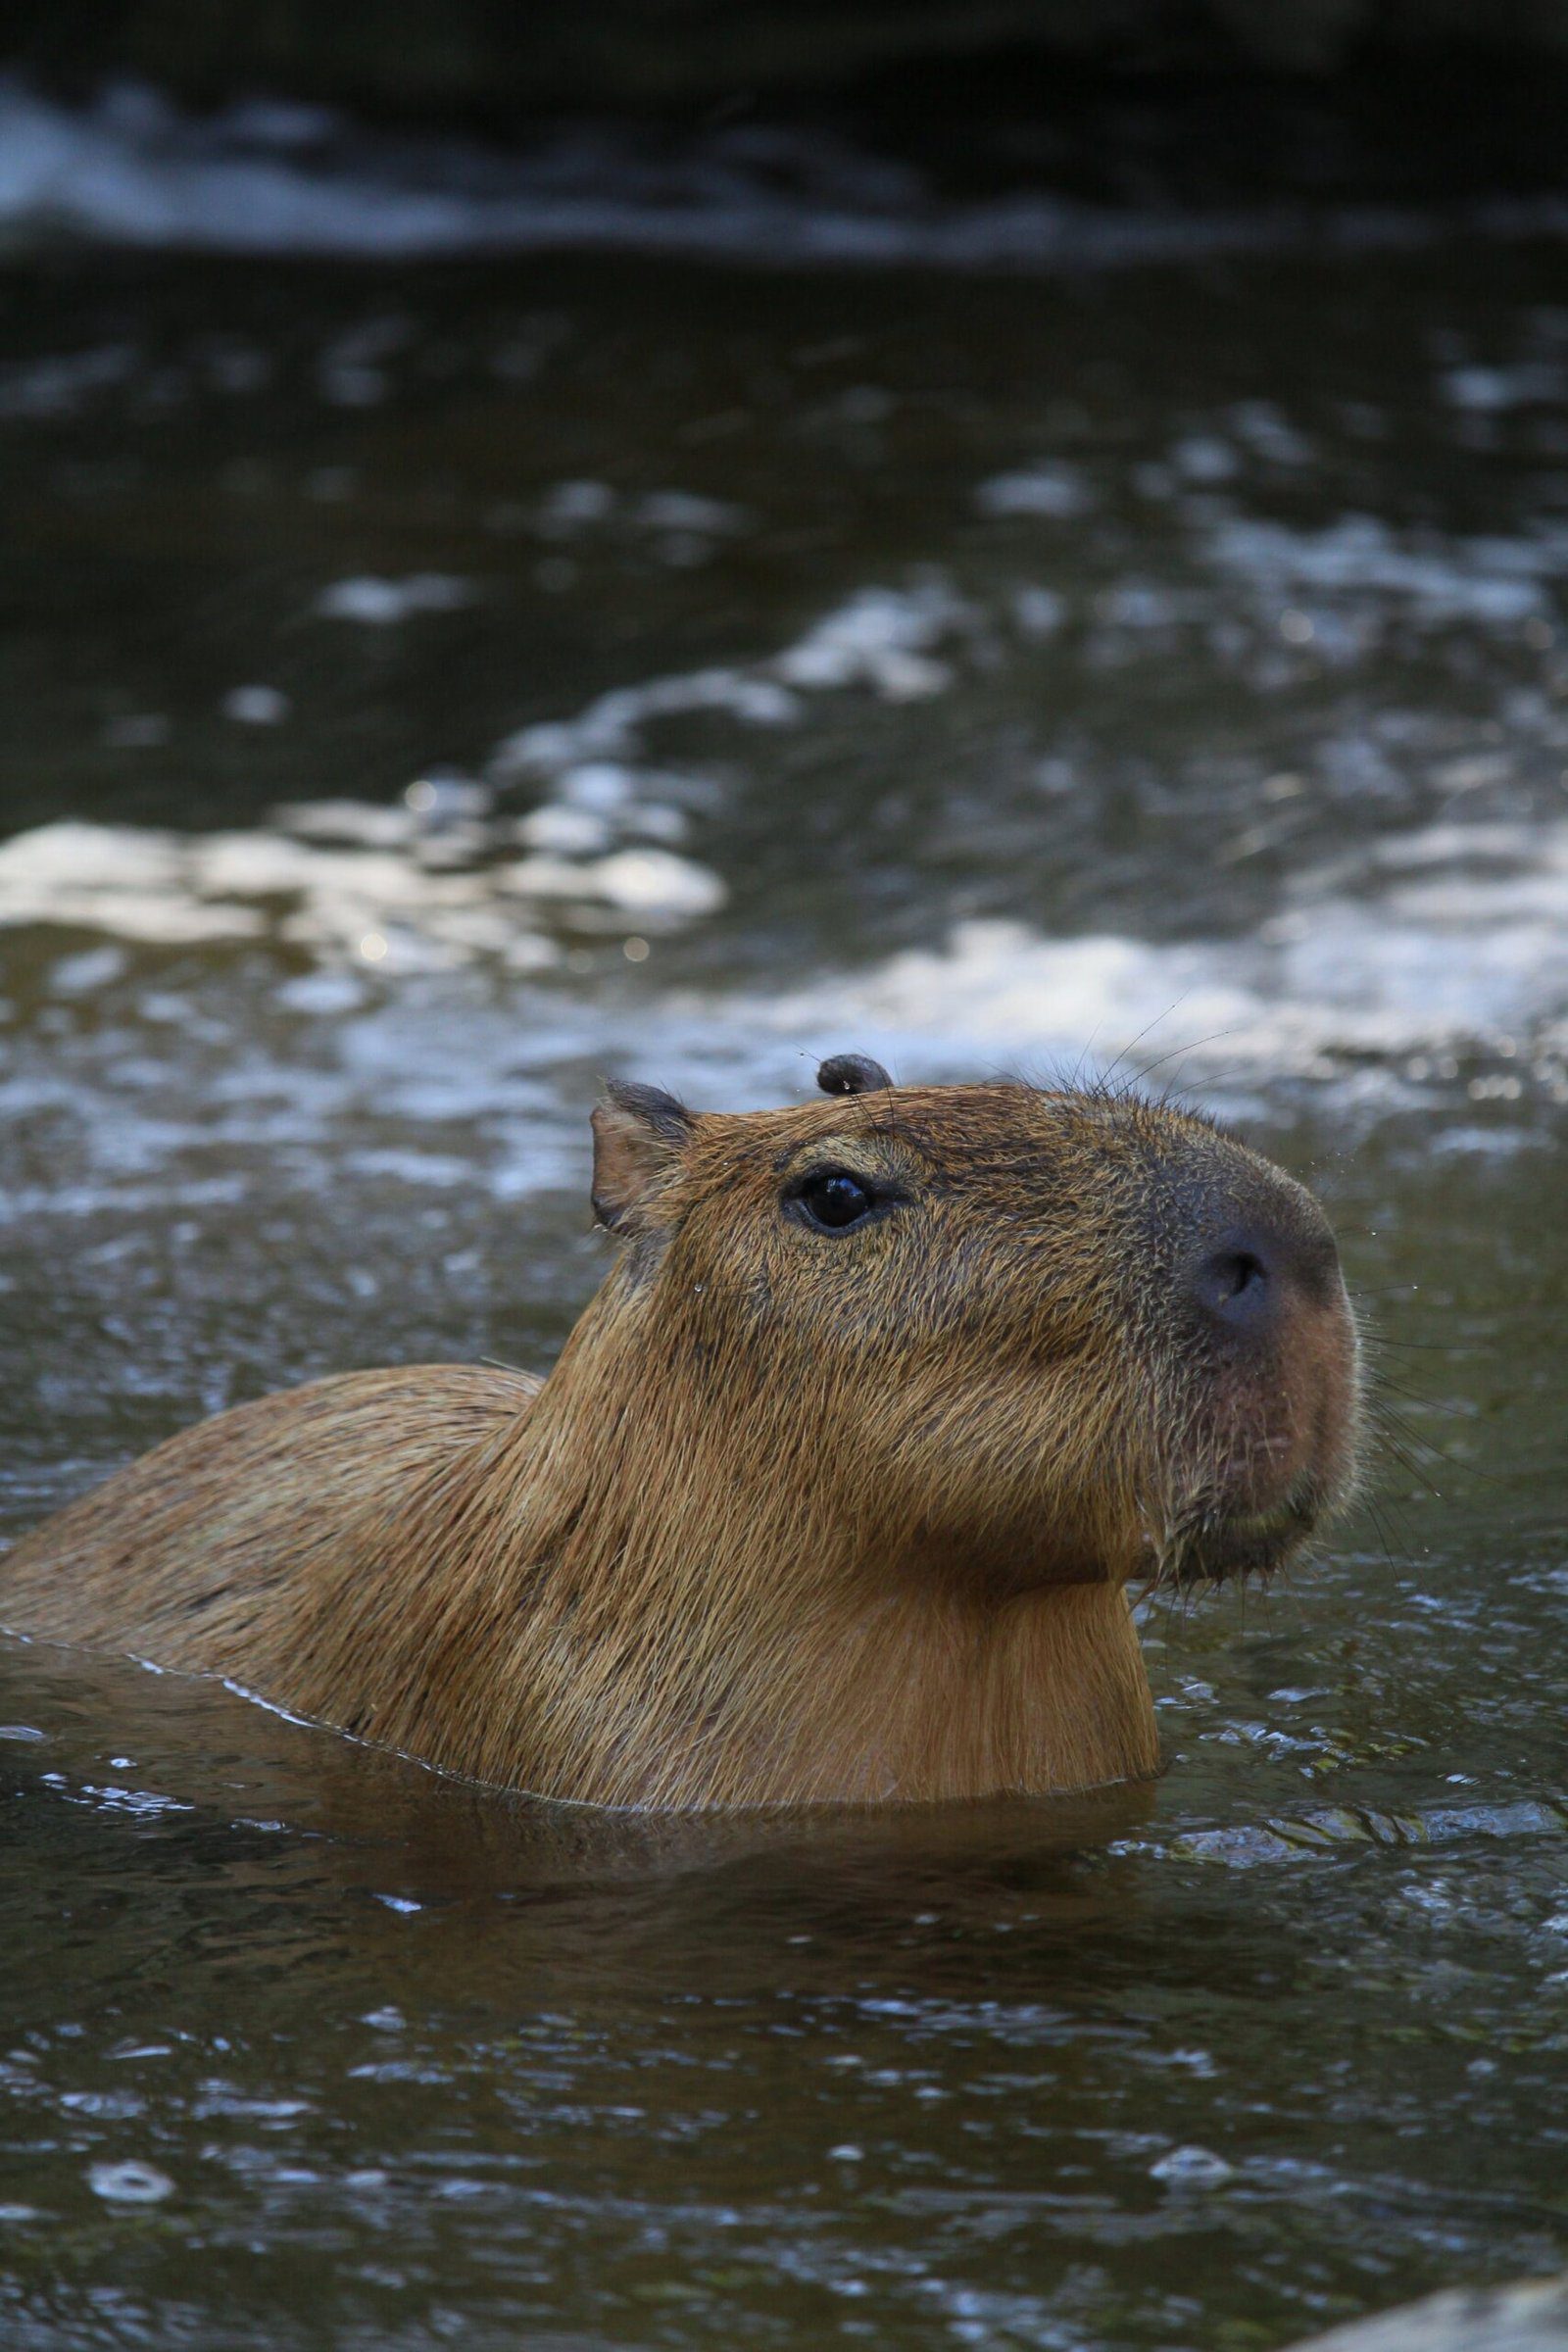 Can I Adopt a Capybara?